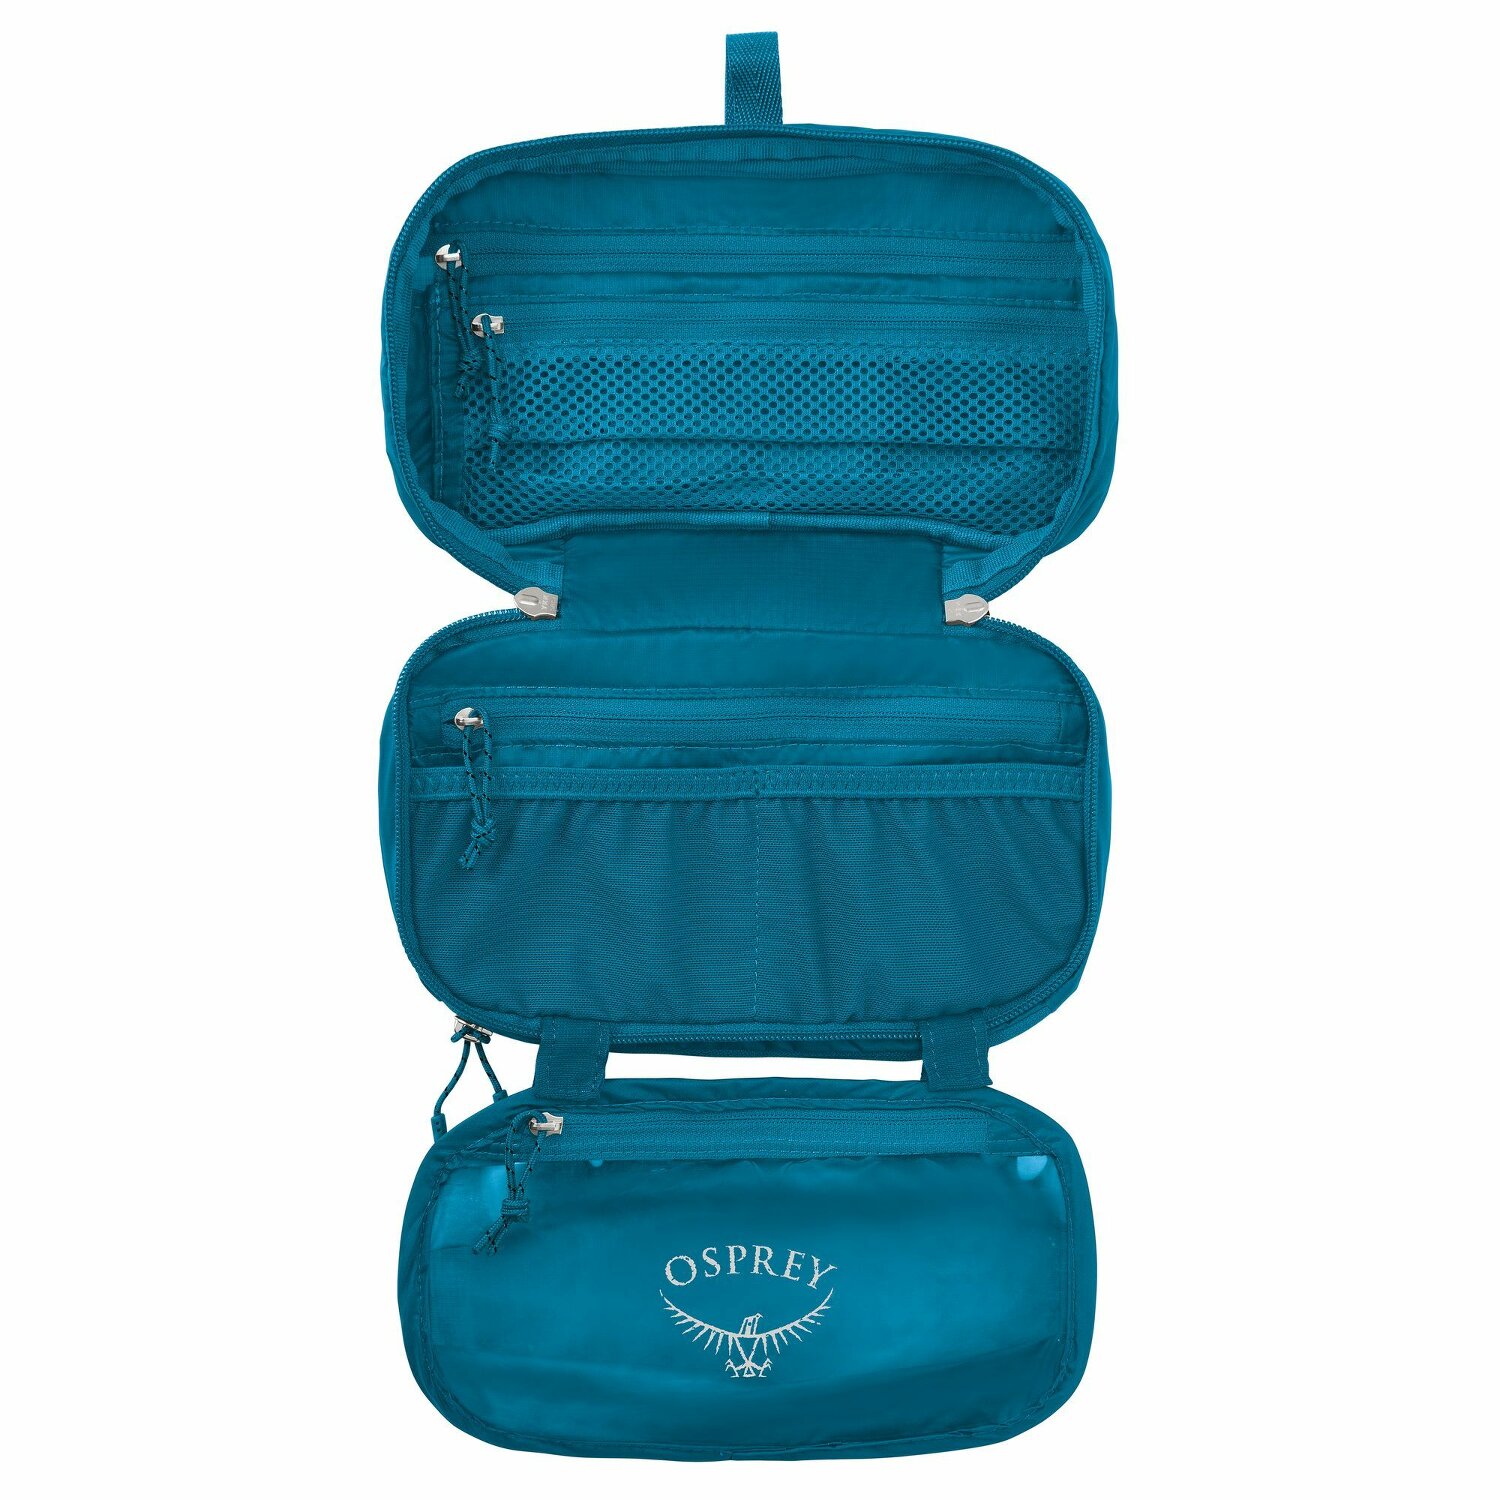 Maken Verlichten ballon Osprey Ultralight Zip Organizer Toilettas 22.5 cm waterfront blue |  Bagage24.nl